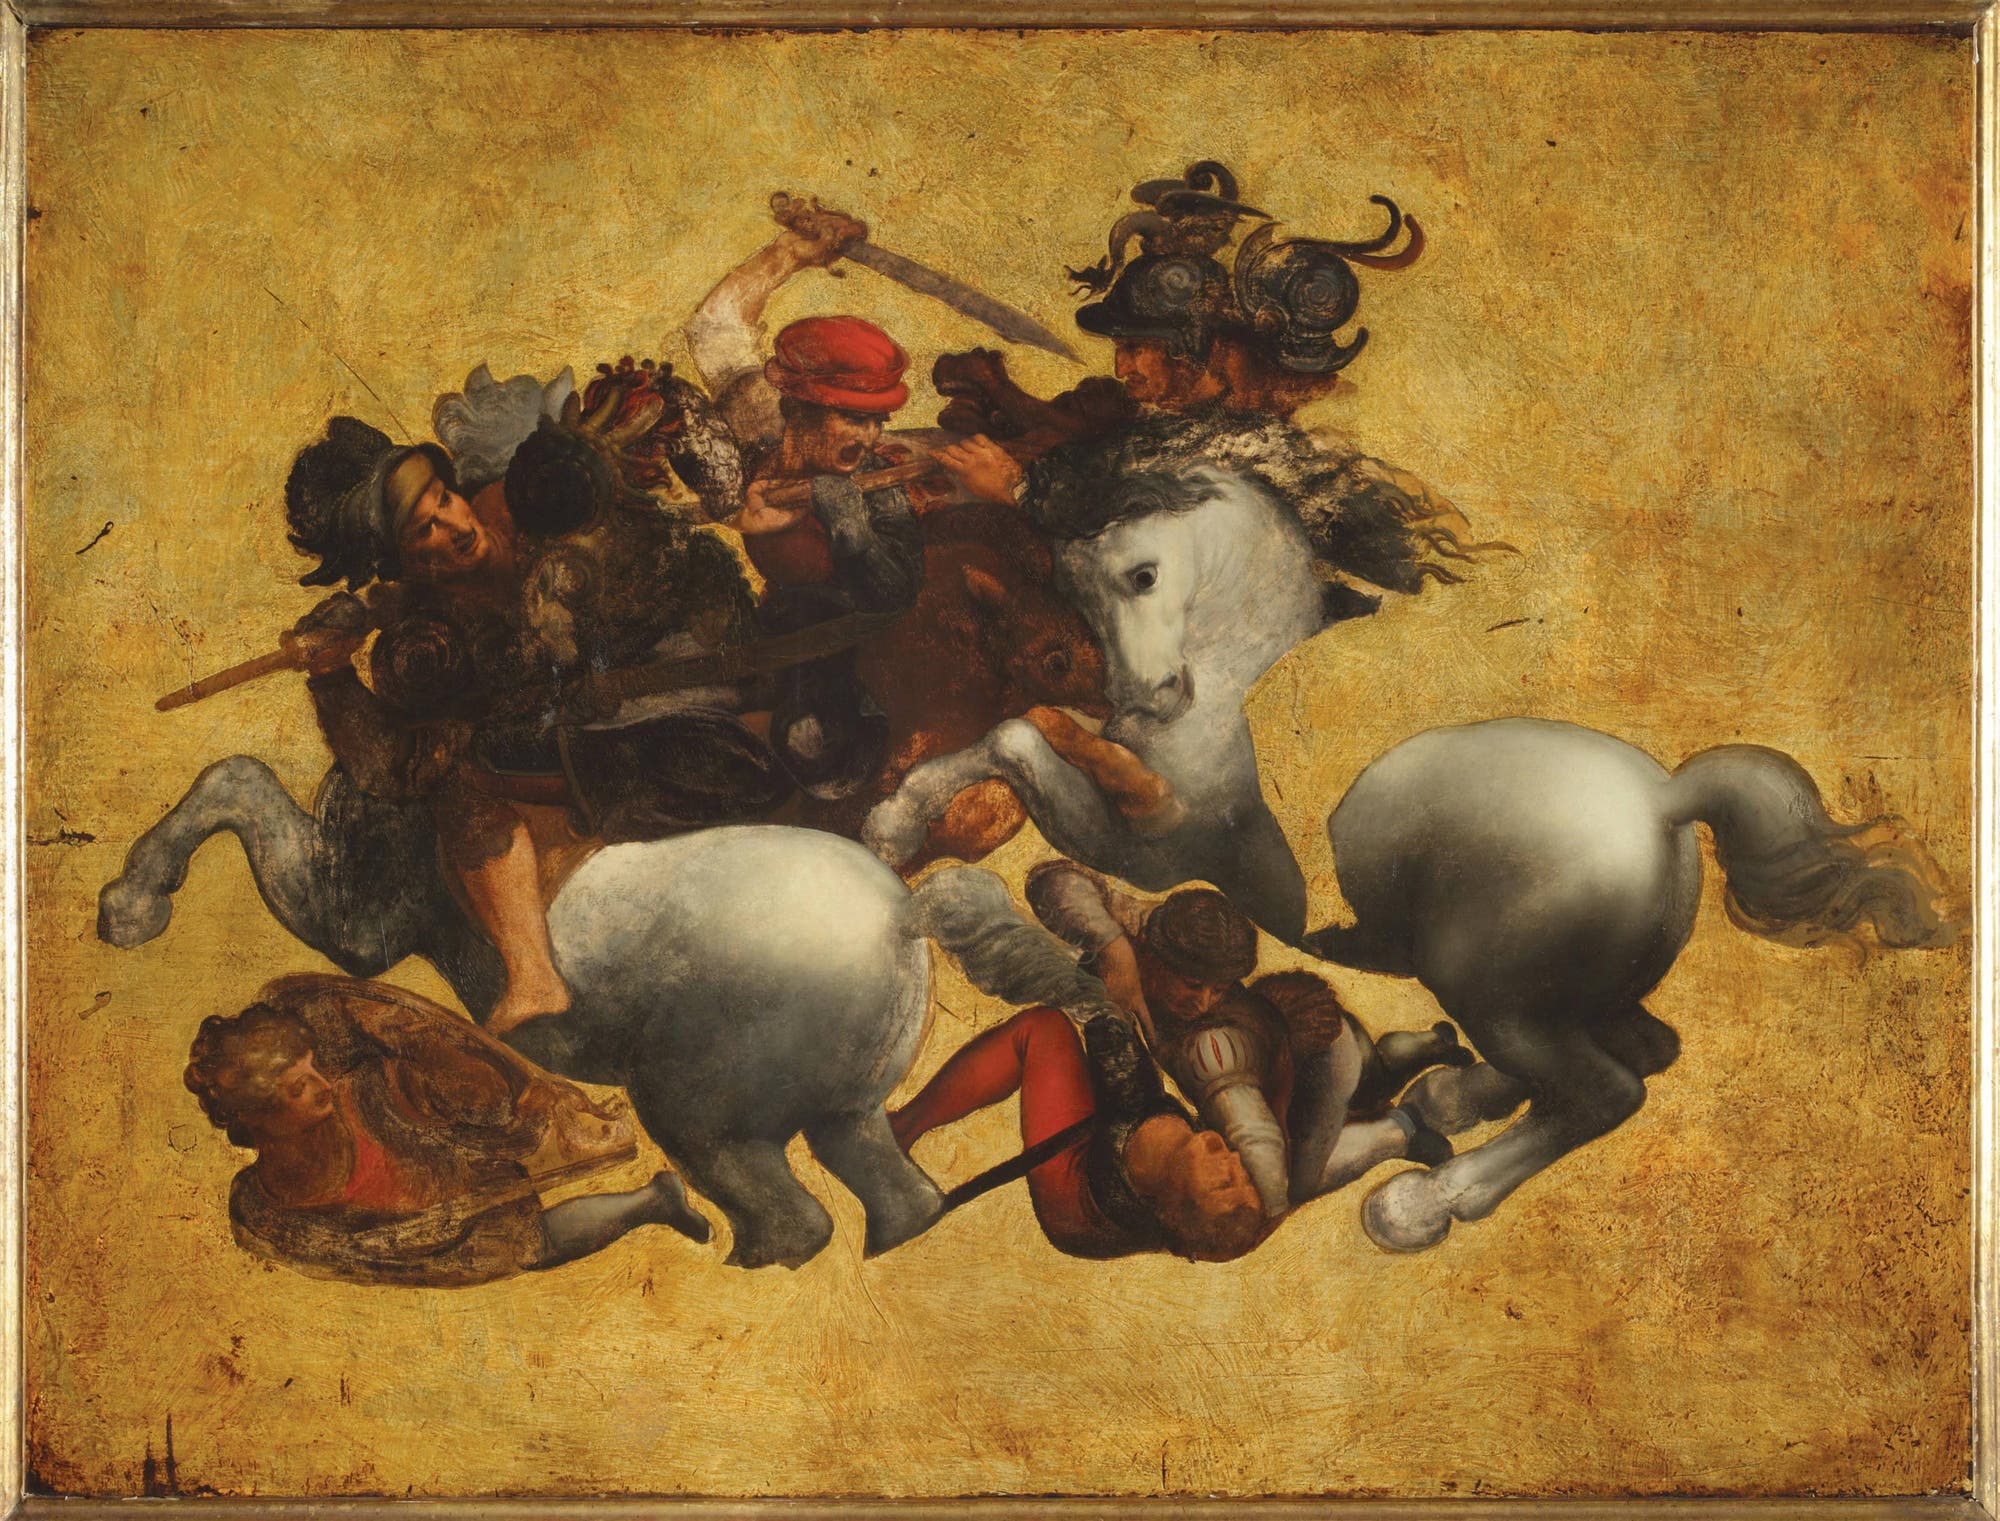 Ein buntes unvollendetes Ölbild zeigt einen Ausschnitt eines intensives Kampfgetümmels. Außer einem halben Dutzend Männern, die sich bekämpfen, sind auch zwei Pferde zu erkennen. Im Zentrum des Bildes erhebt sich eine schreiende Figur mit roter Kopfbedeckung, die hoch über dem Kopf ein Schwert schwingt.